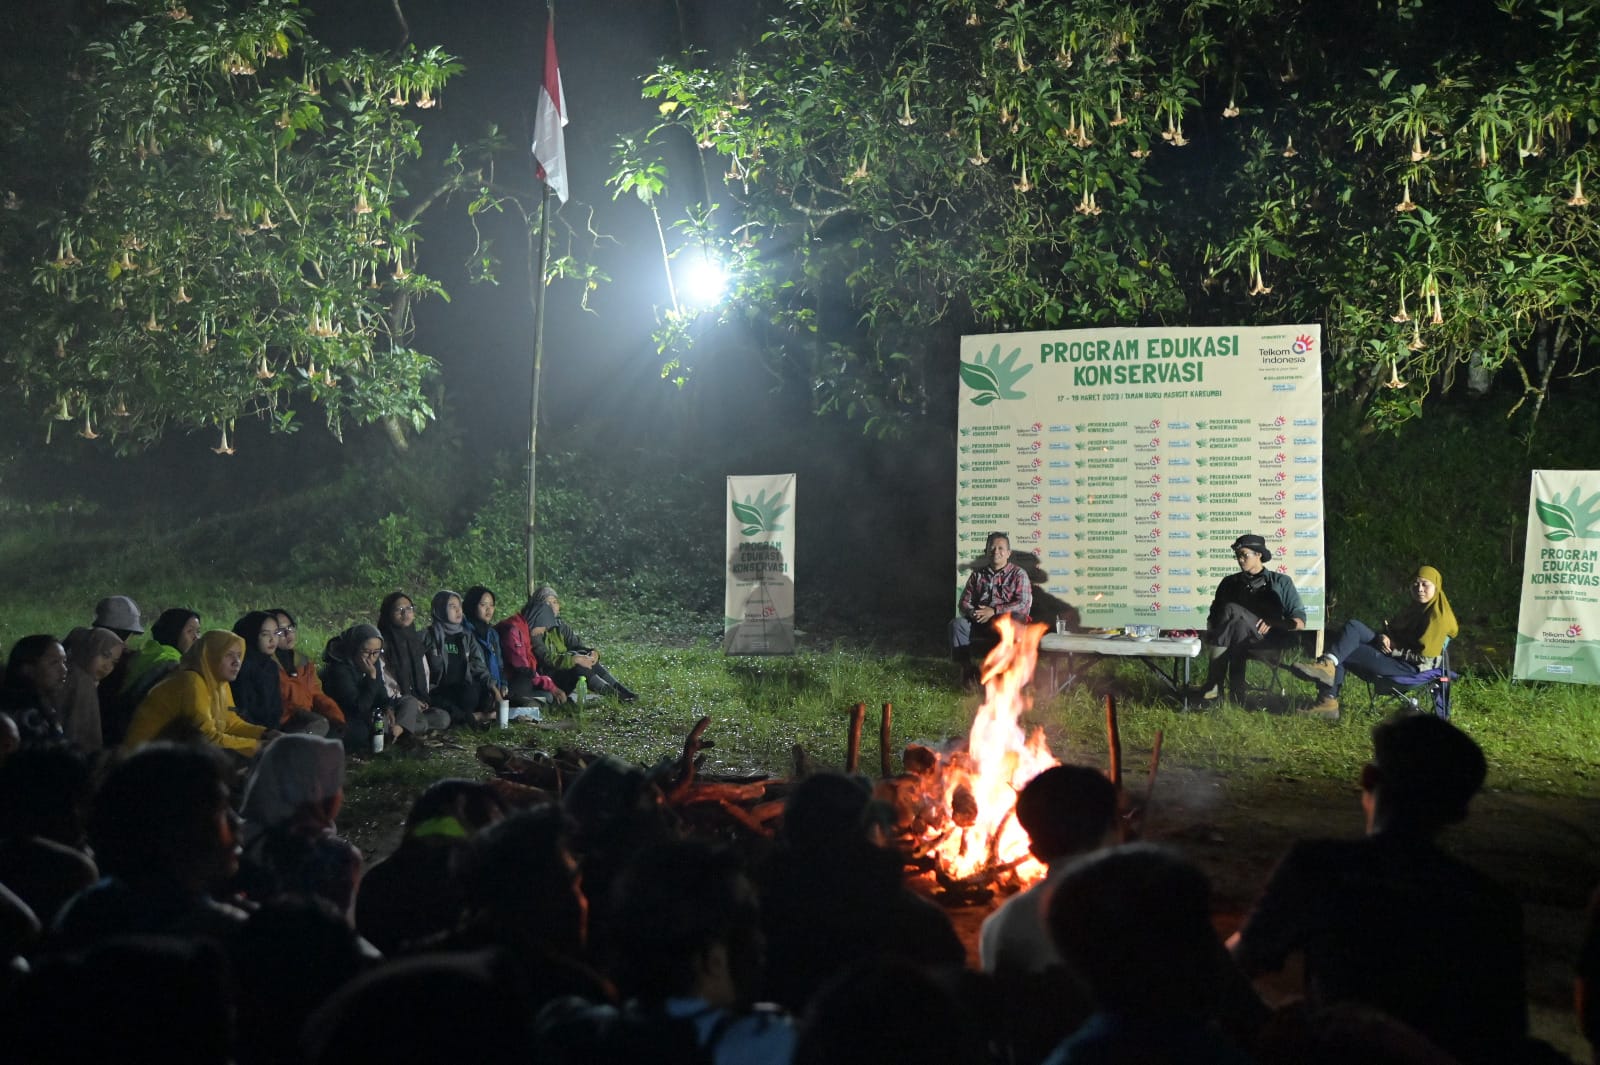 Telkom Indonesia (TLKM) Berdayakan Generasi Muda Lewat Program Edukasi Konservasi